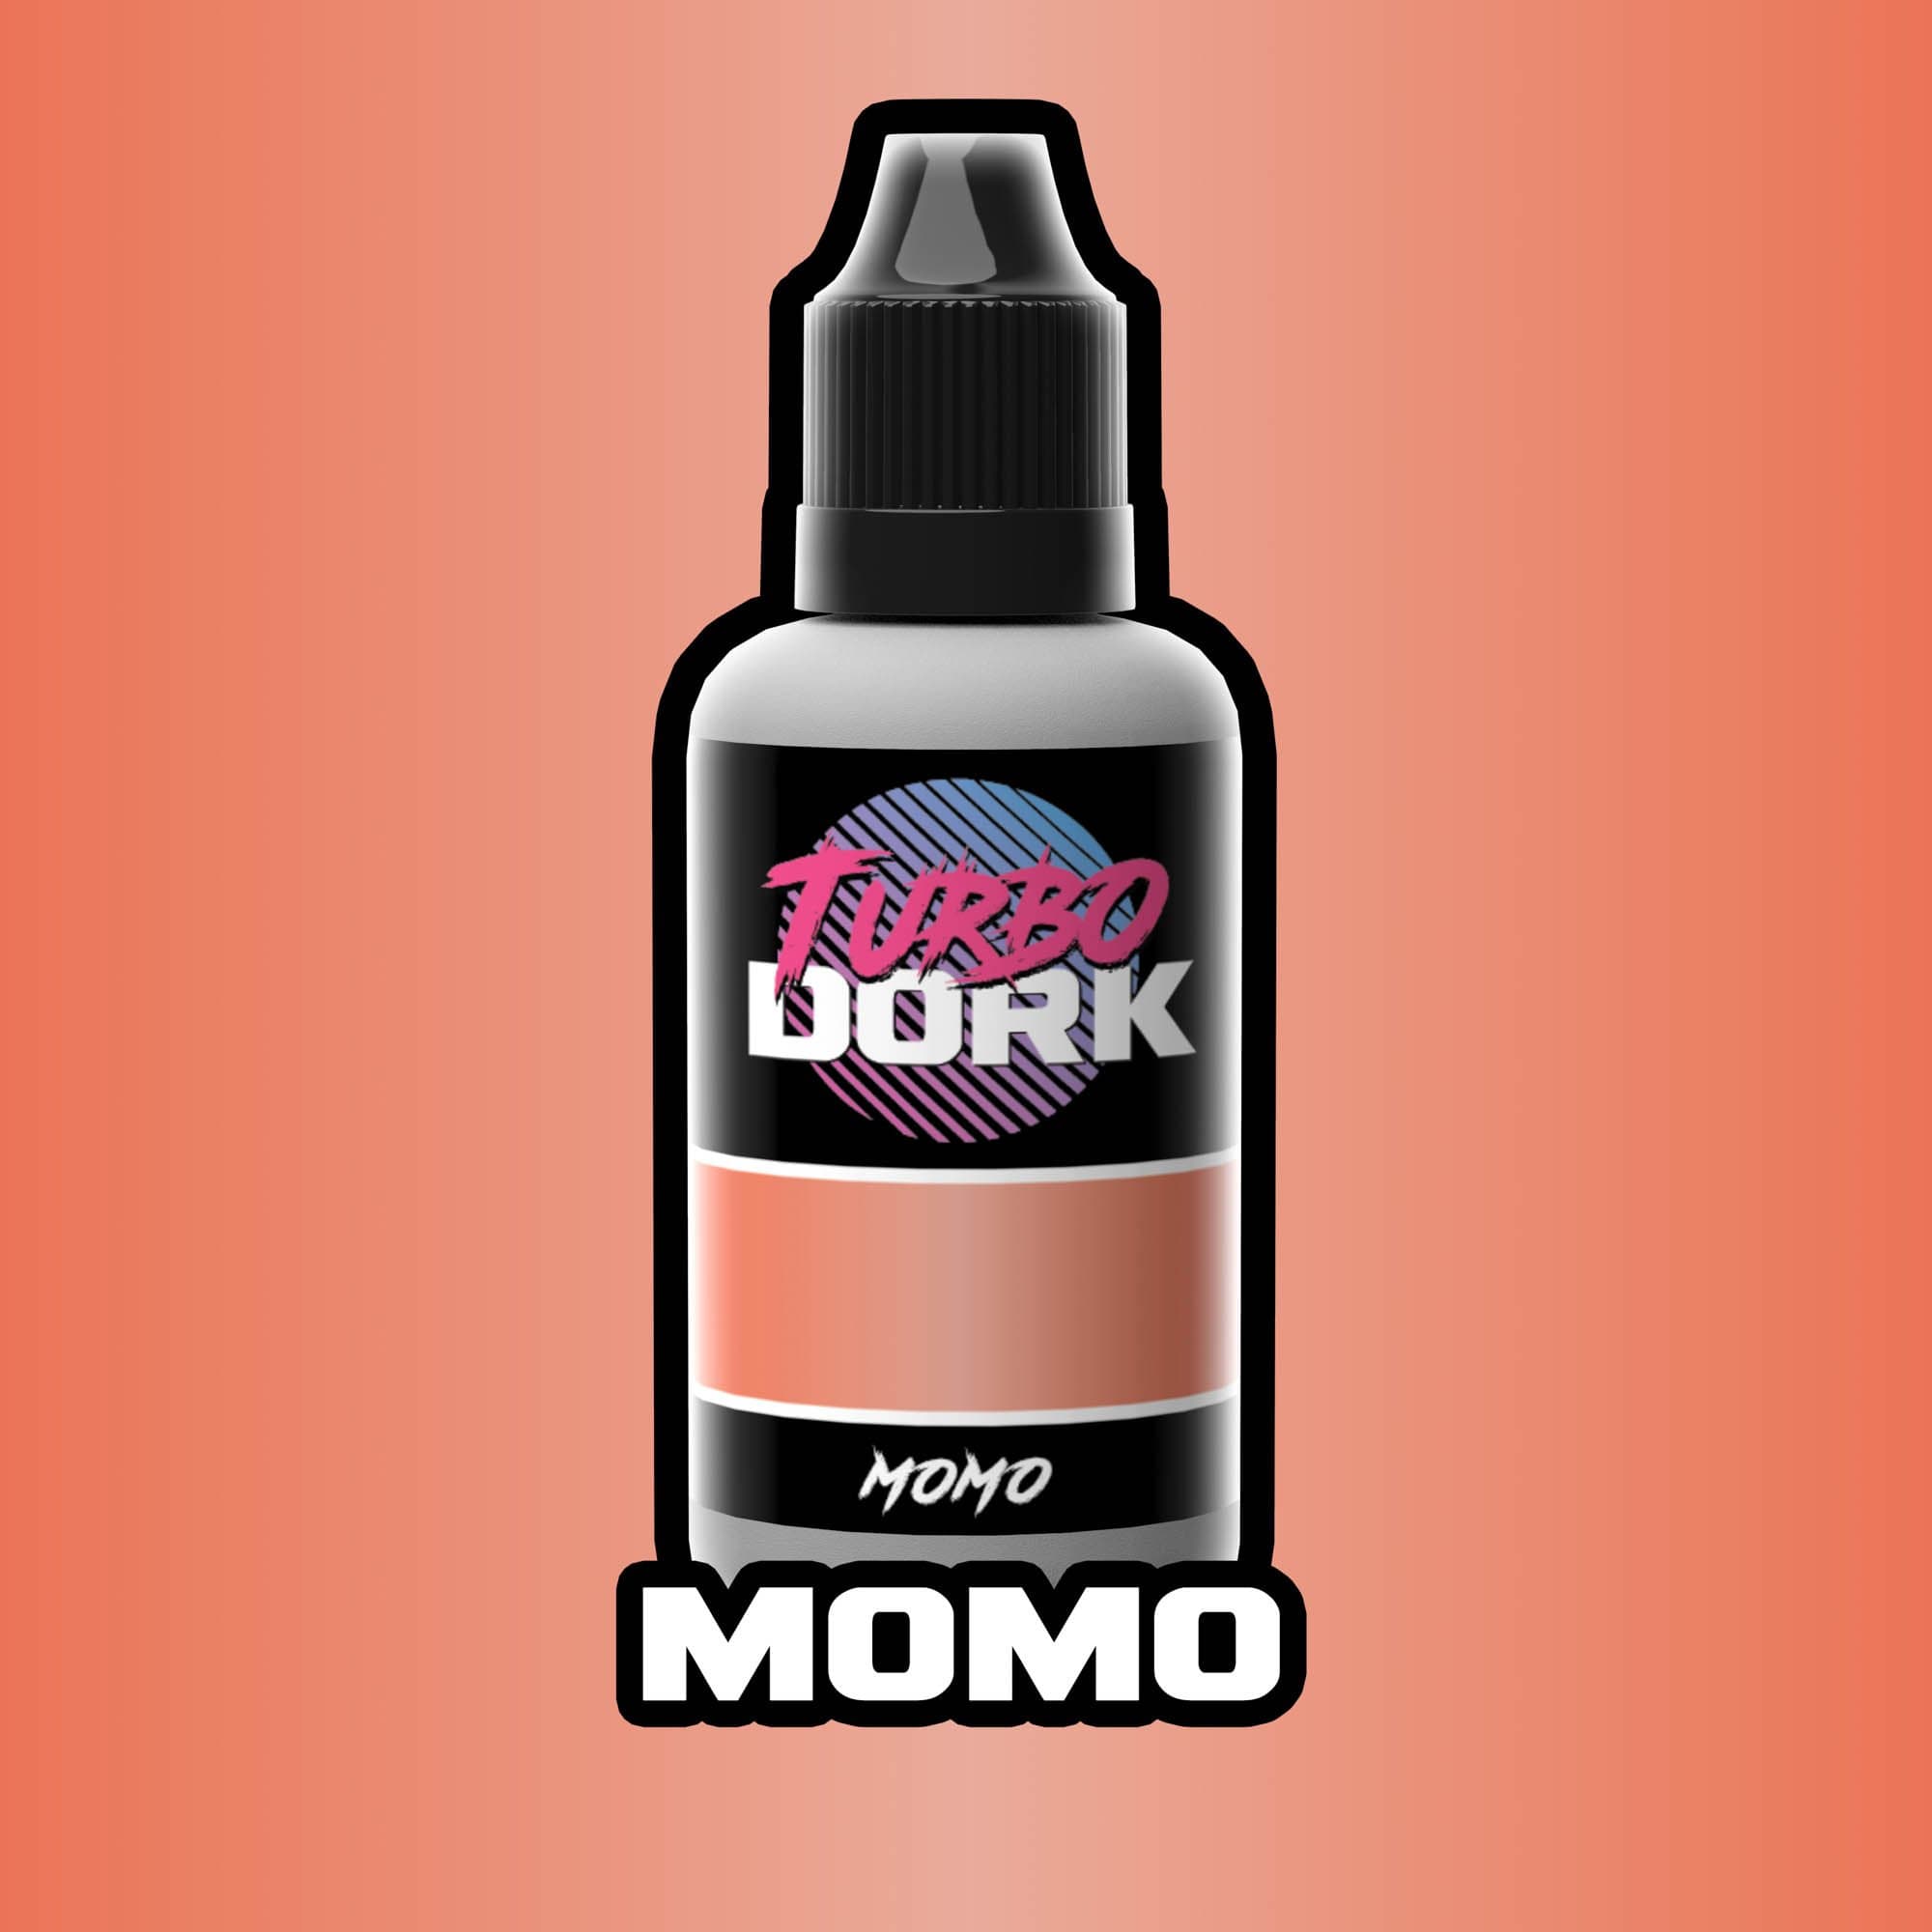 Momo Metallic Acrylic Paint Metallic Turbo Dork Exit 23 Games Momo Metallic Acrylic Paint